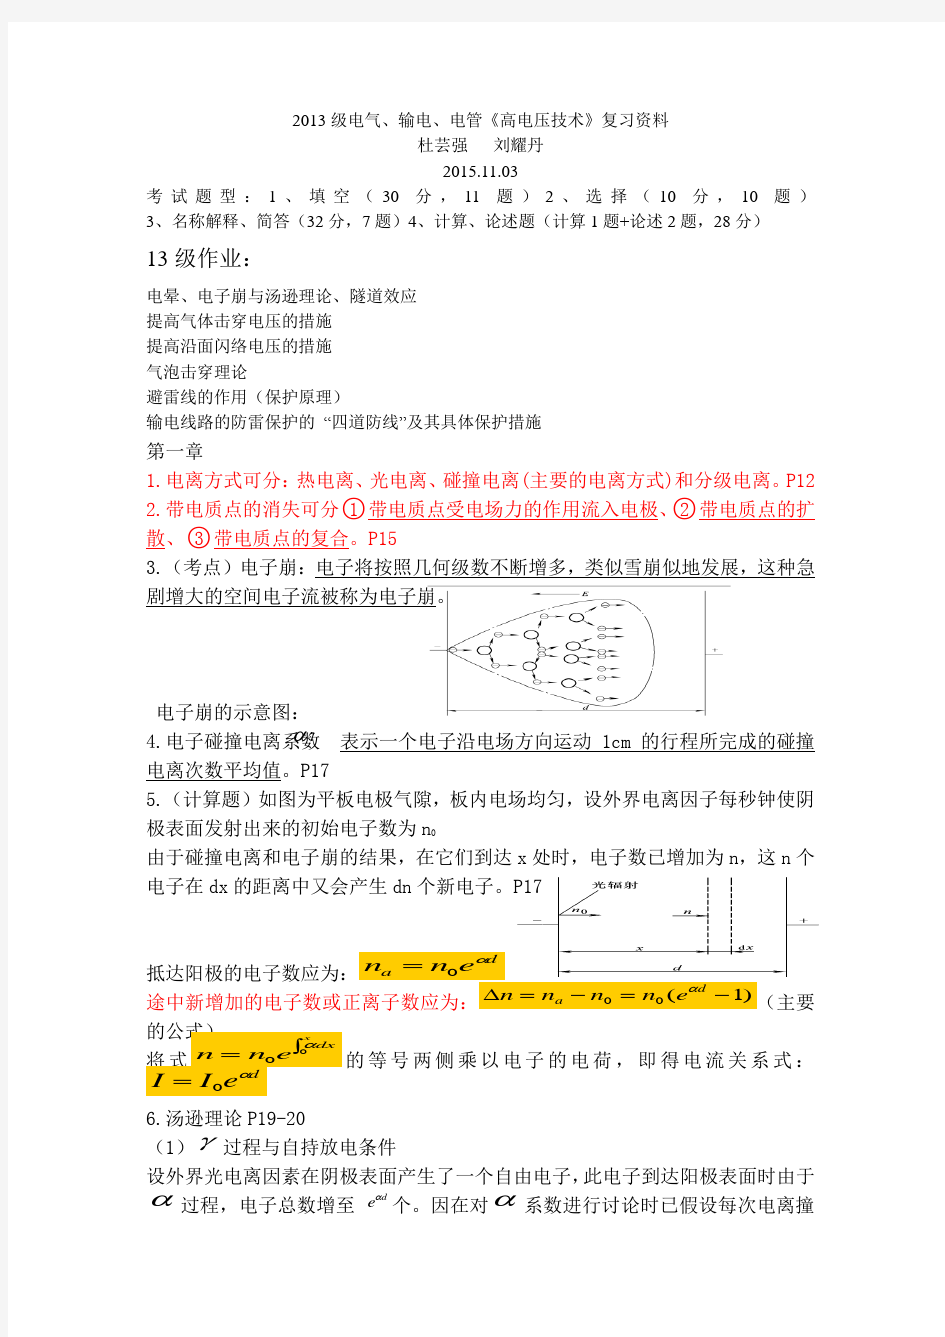 20151103高电压技术复习资料(整理)